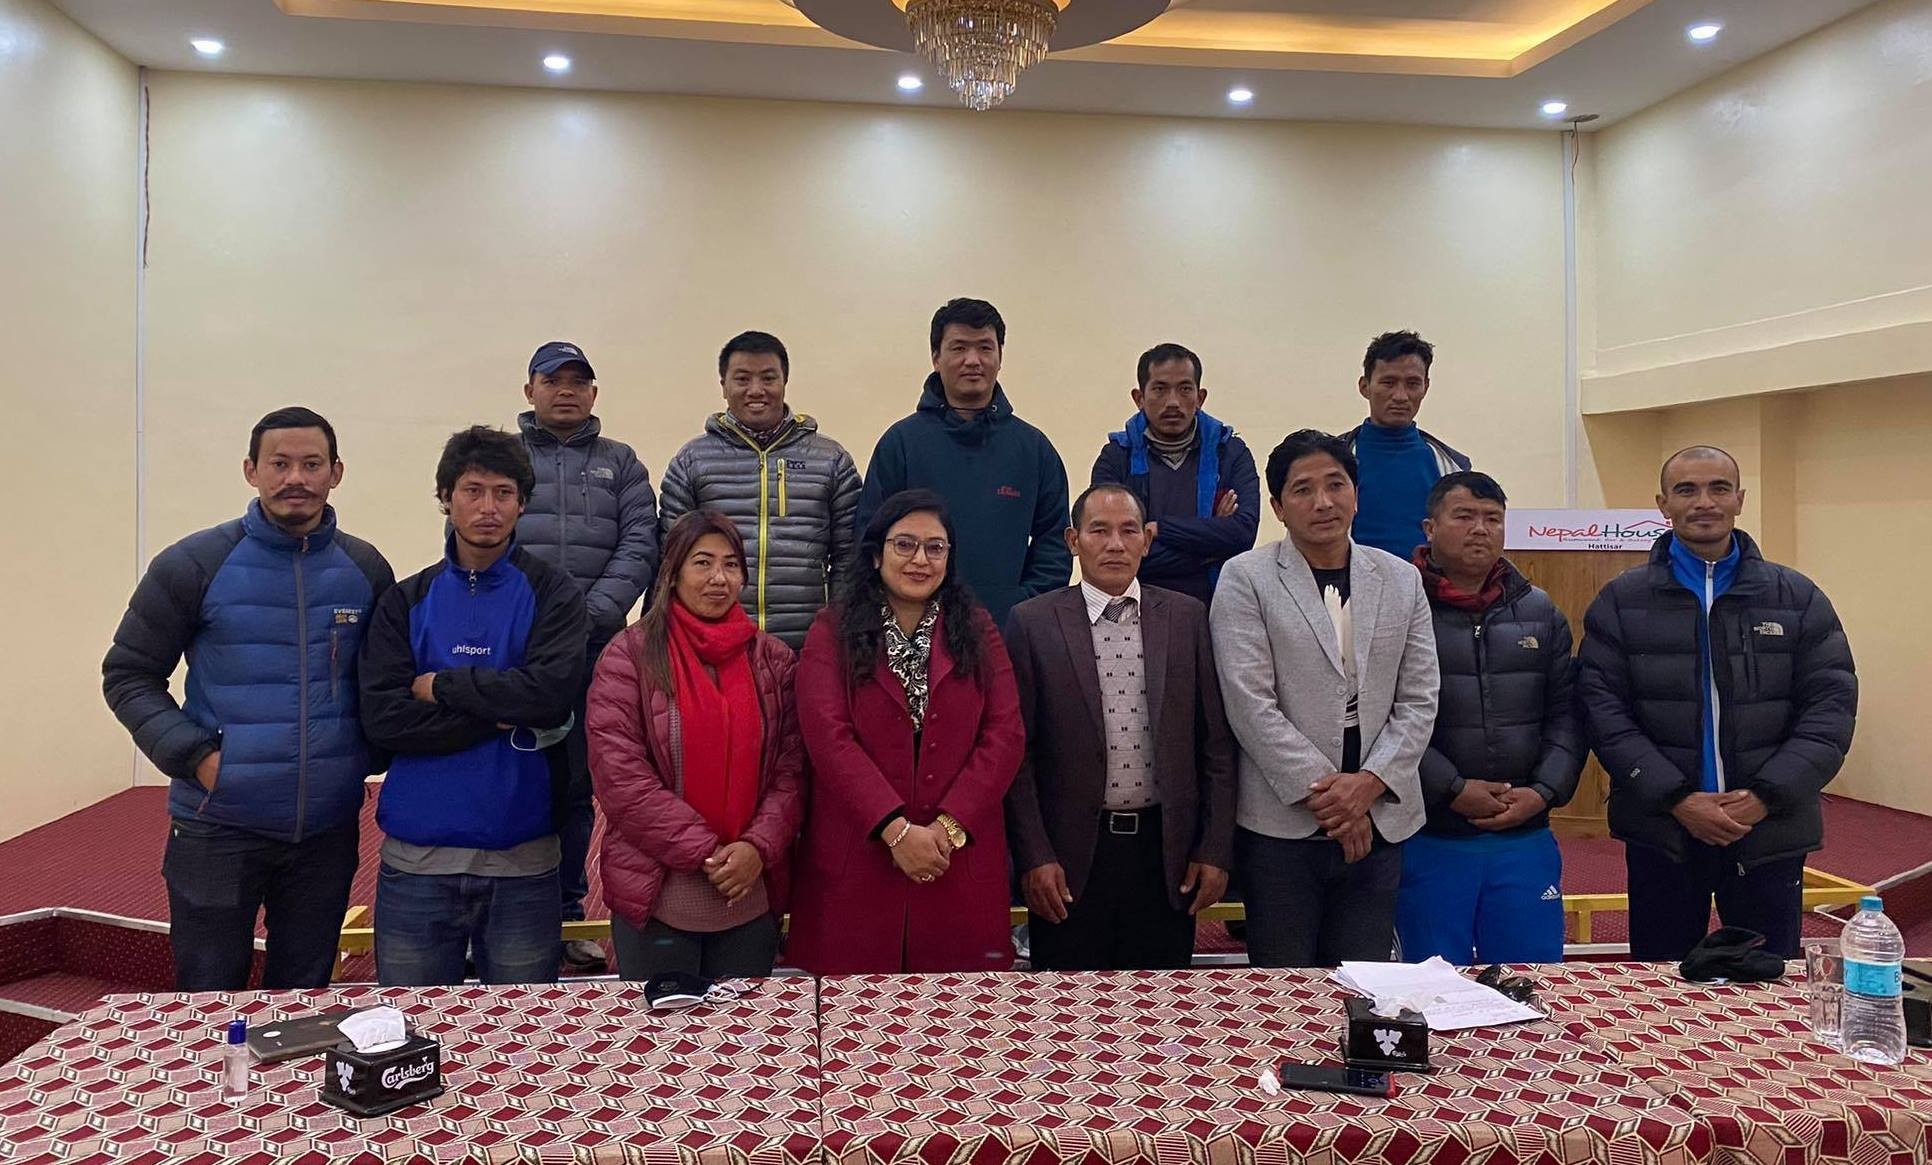 काठमाडौंका क्लबसँग भलिबल संघको छलफल